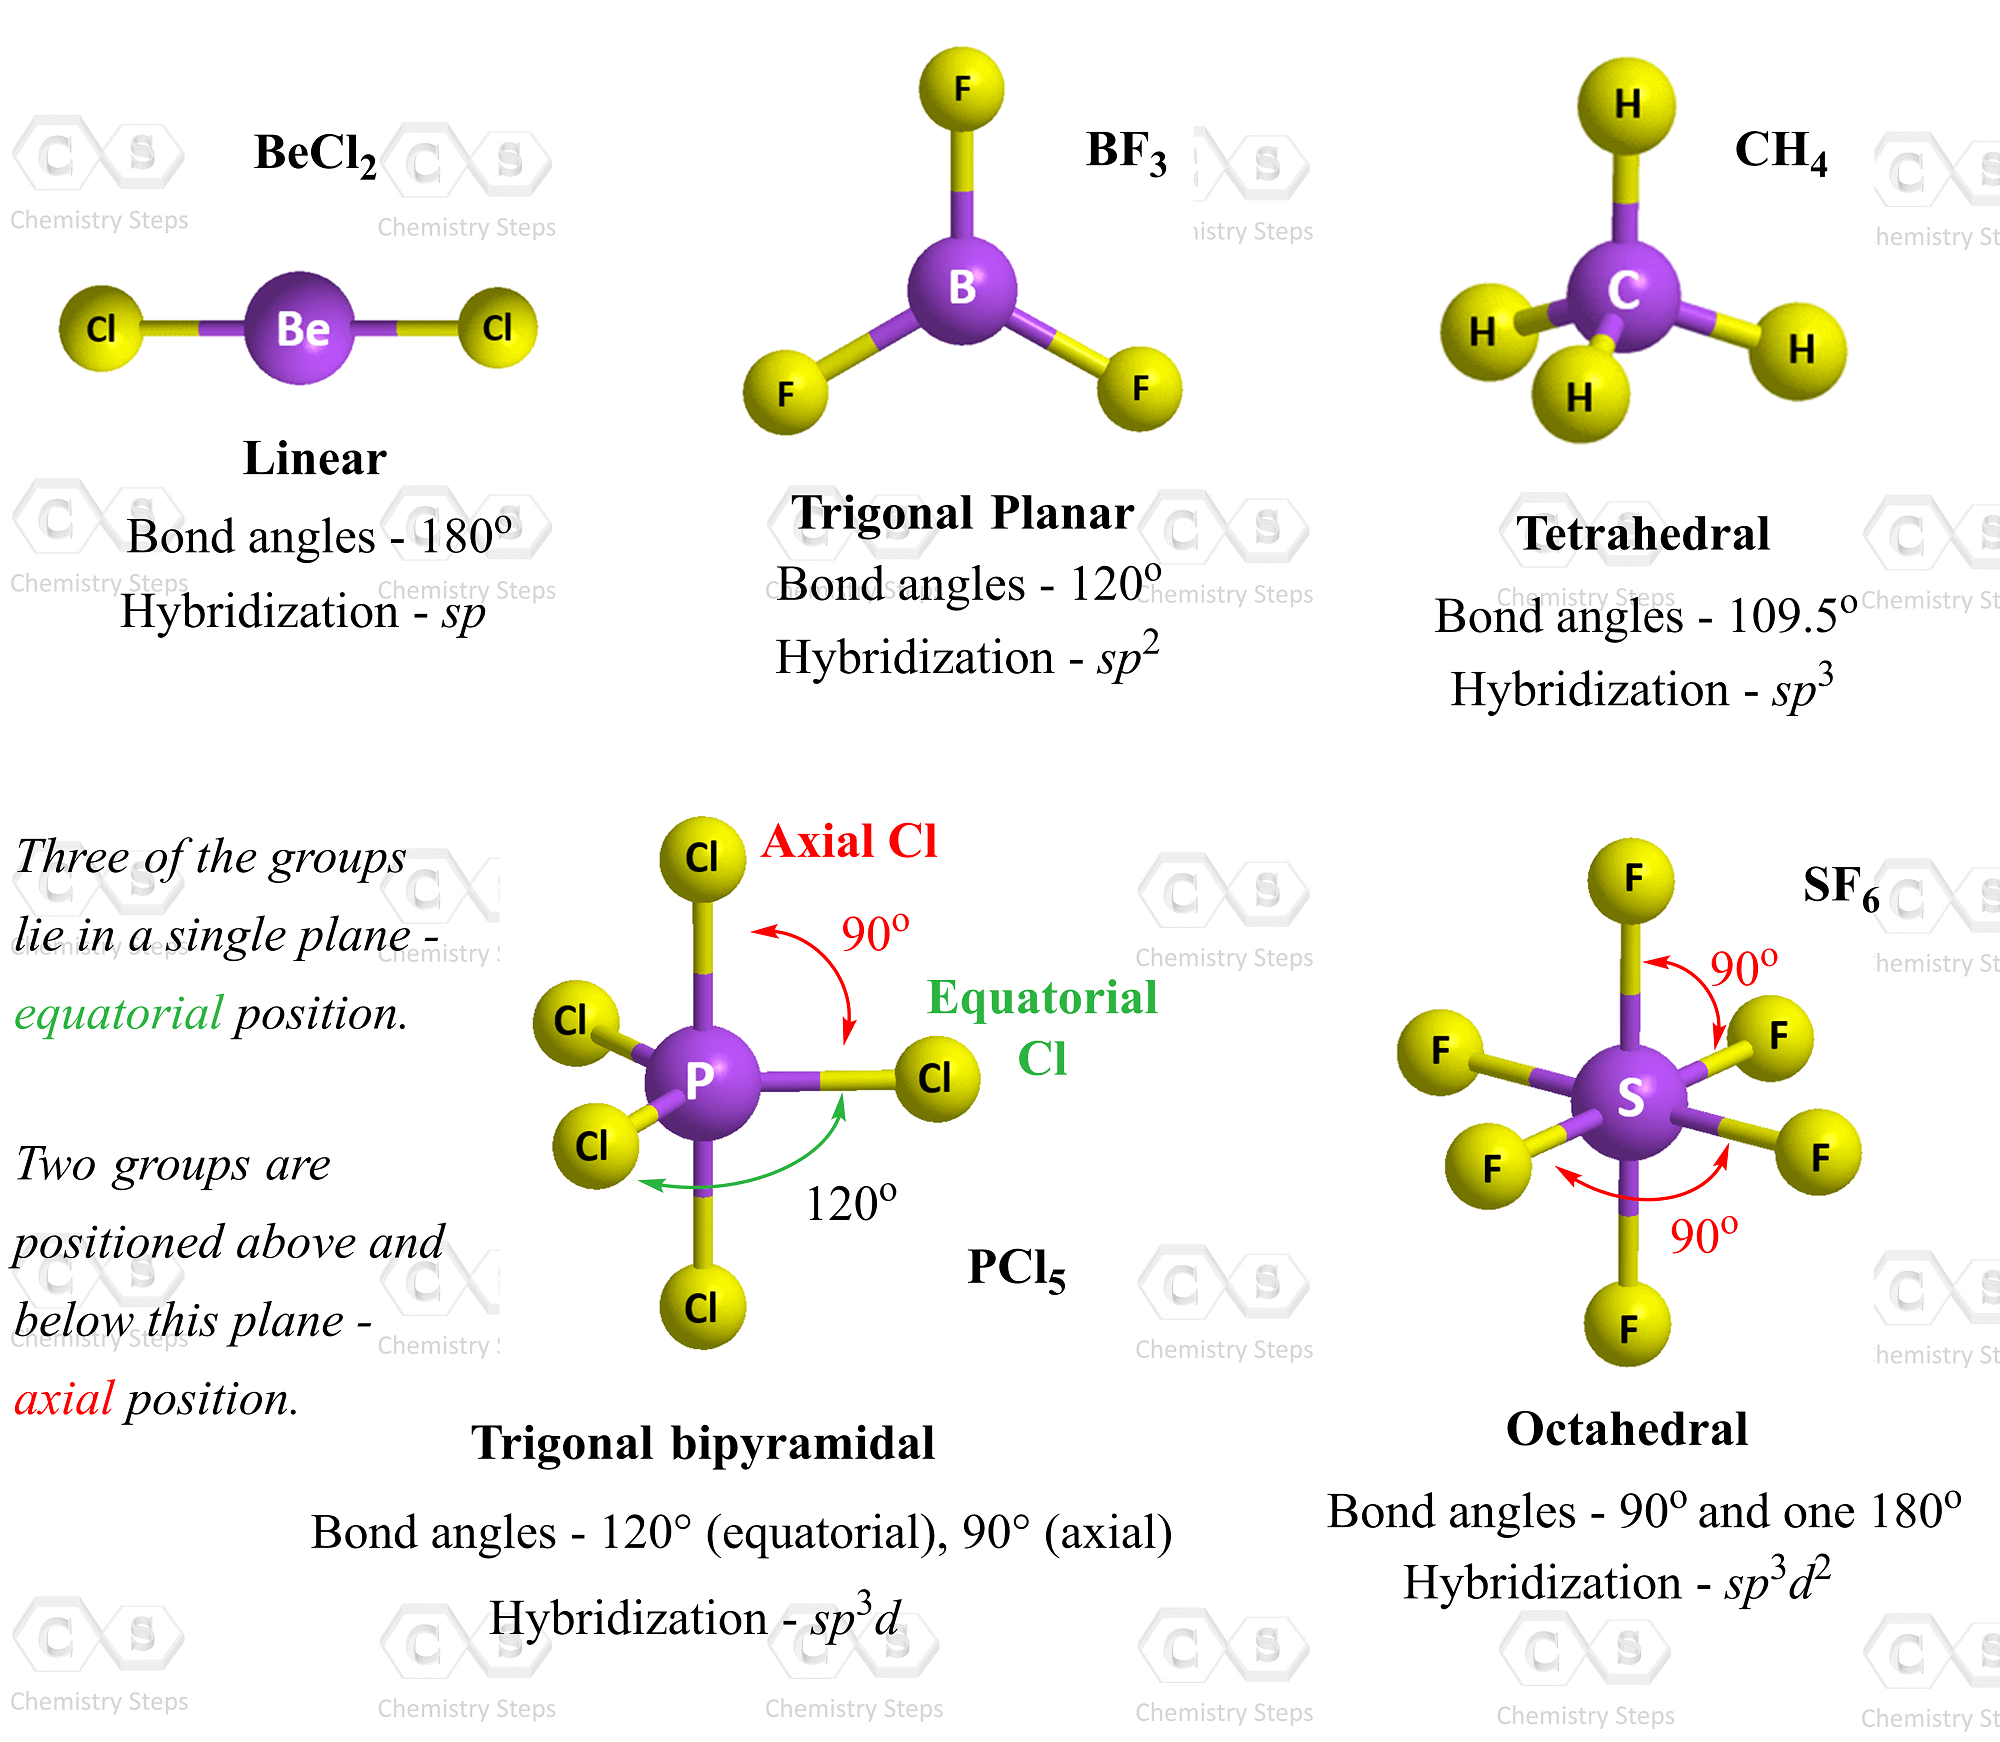 VSEPR Theory - Chemistry Steps